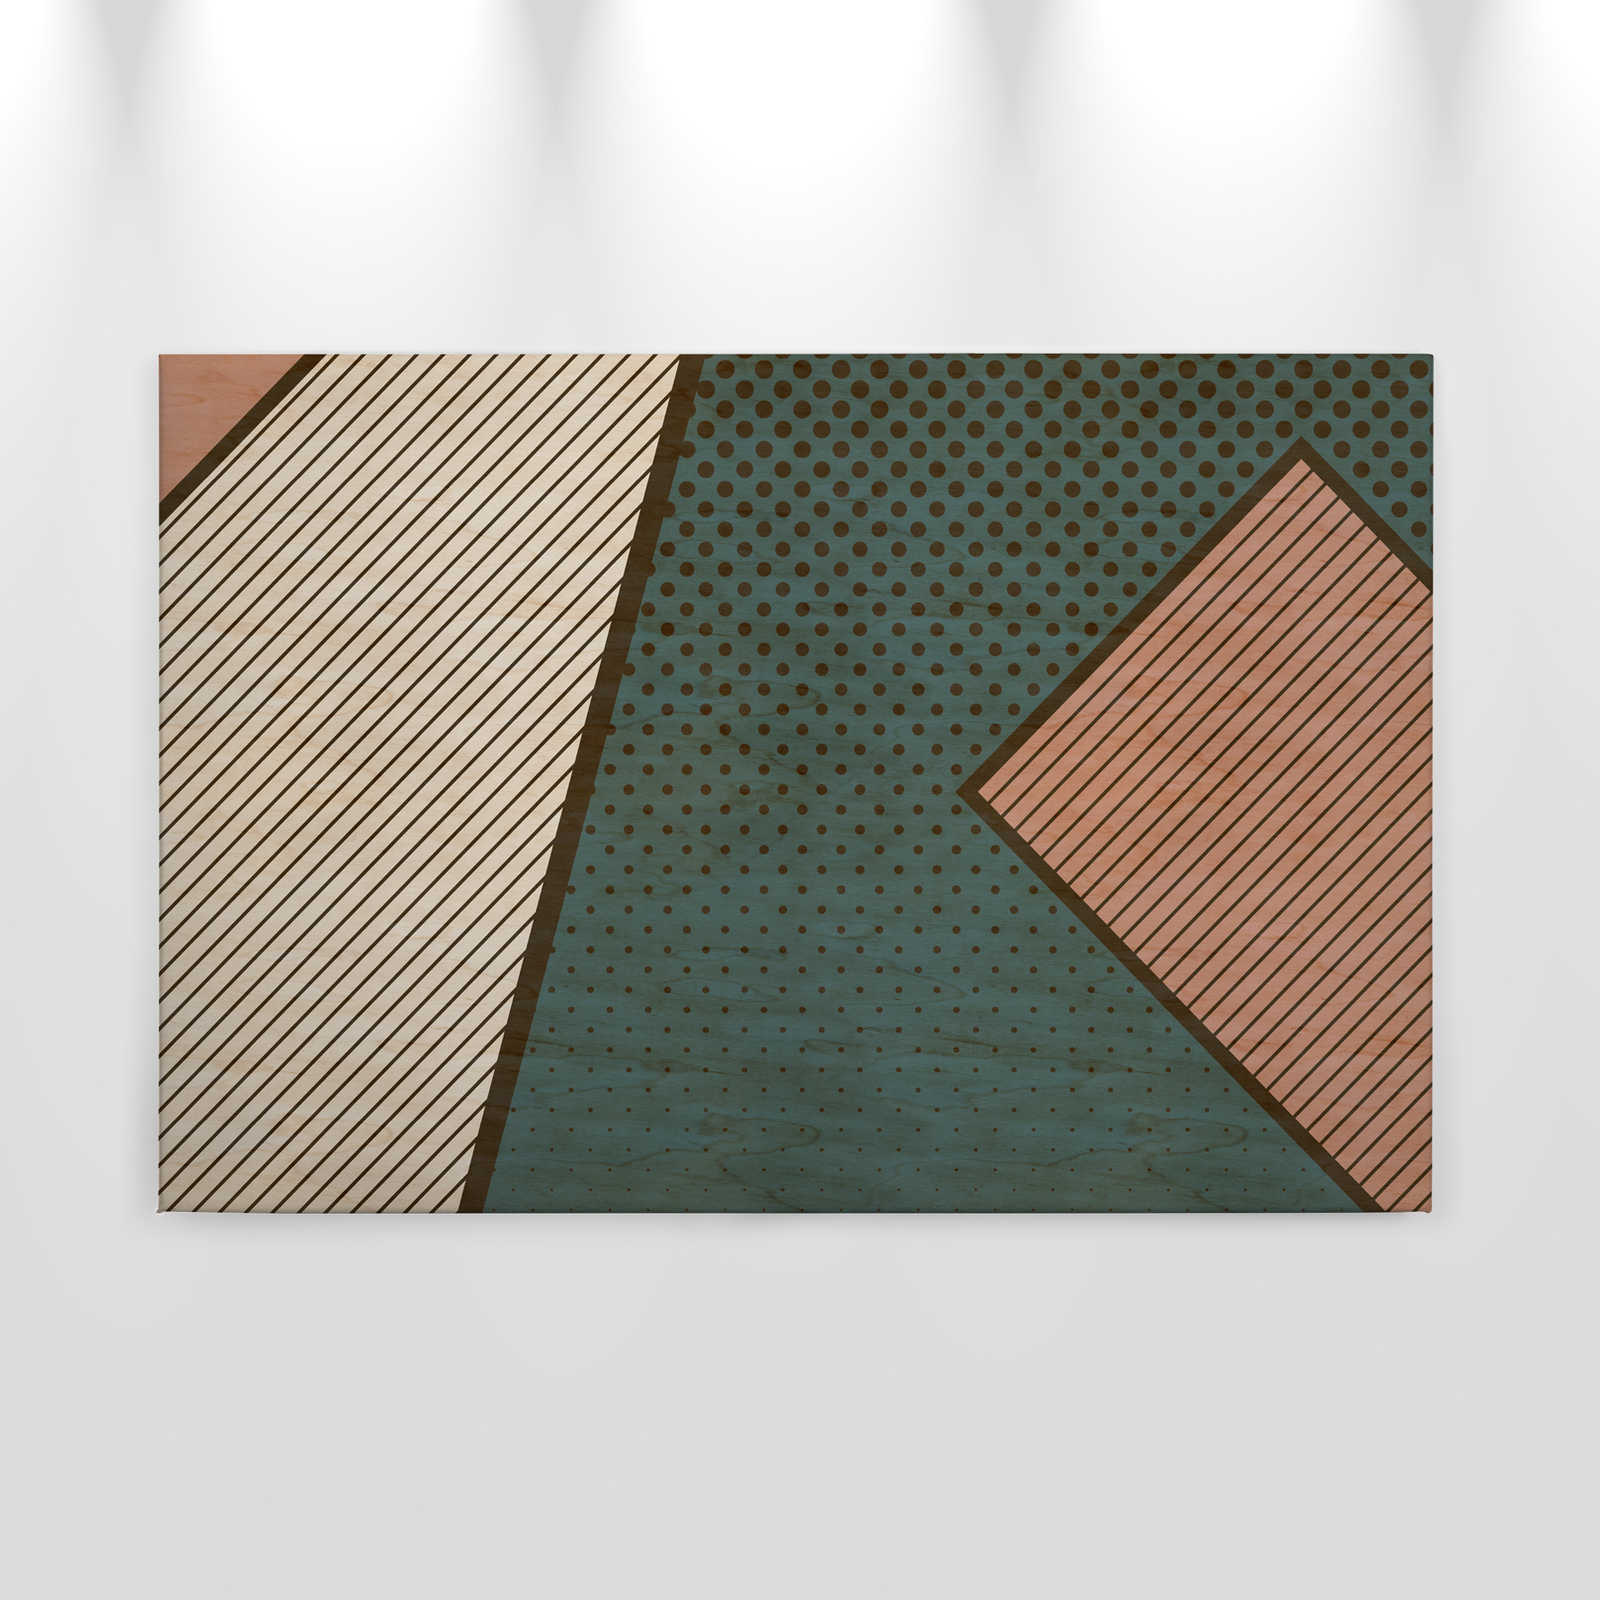             Vogelbende 1 - canvas schilderij met patroon, multiplex structuur met moderne gekleurde vlakken - 0,90 m x 0,60 m
        